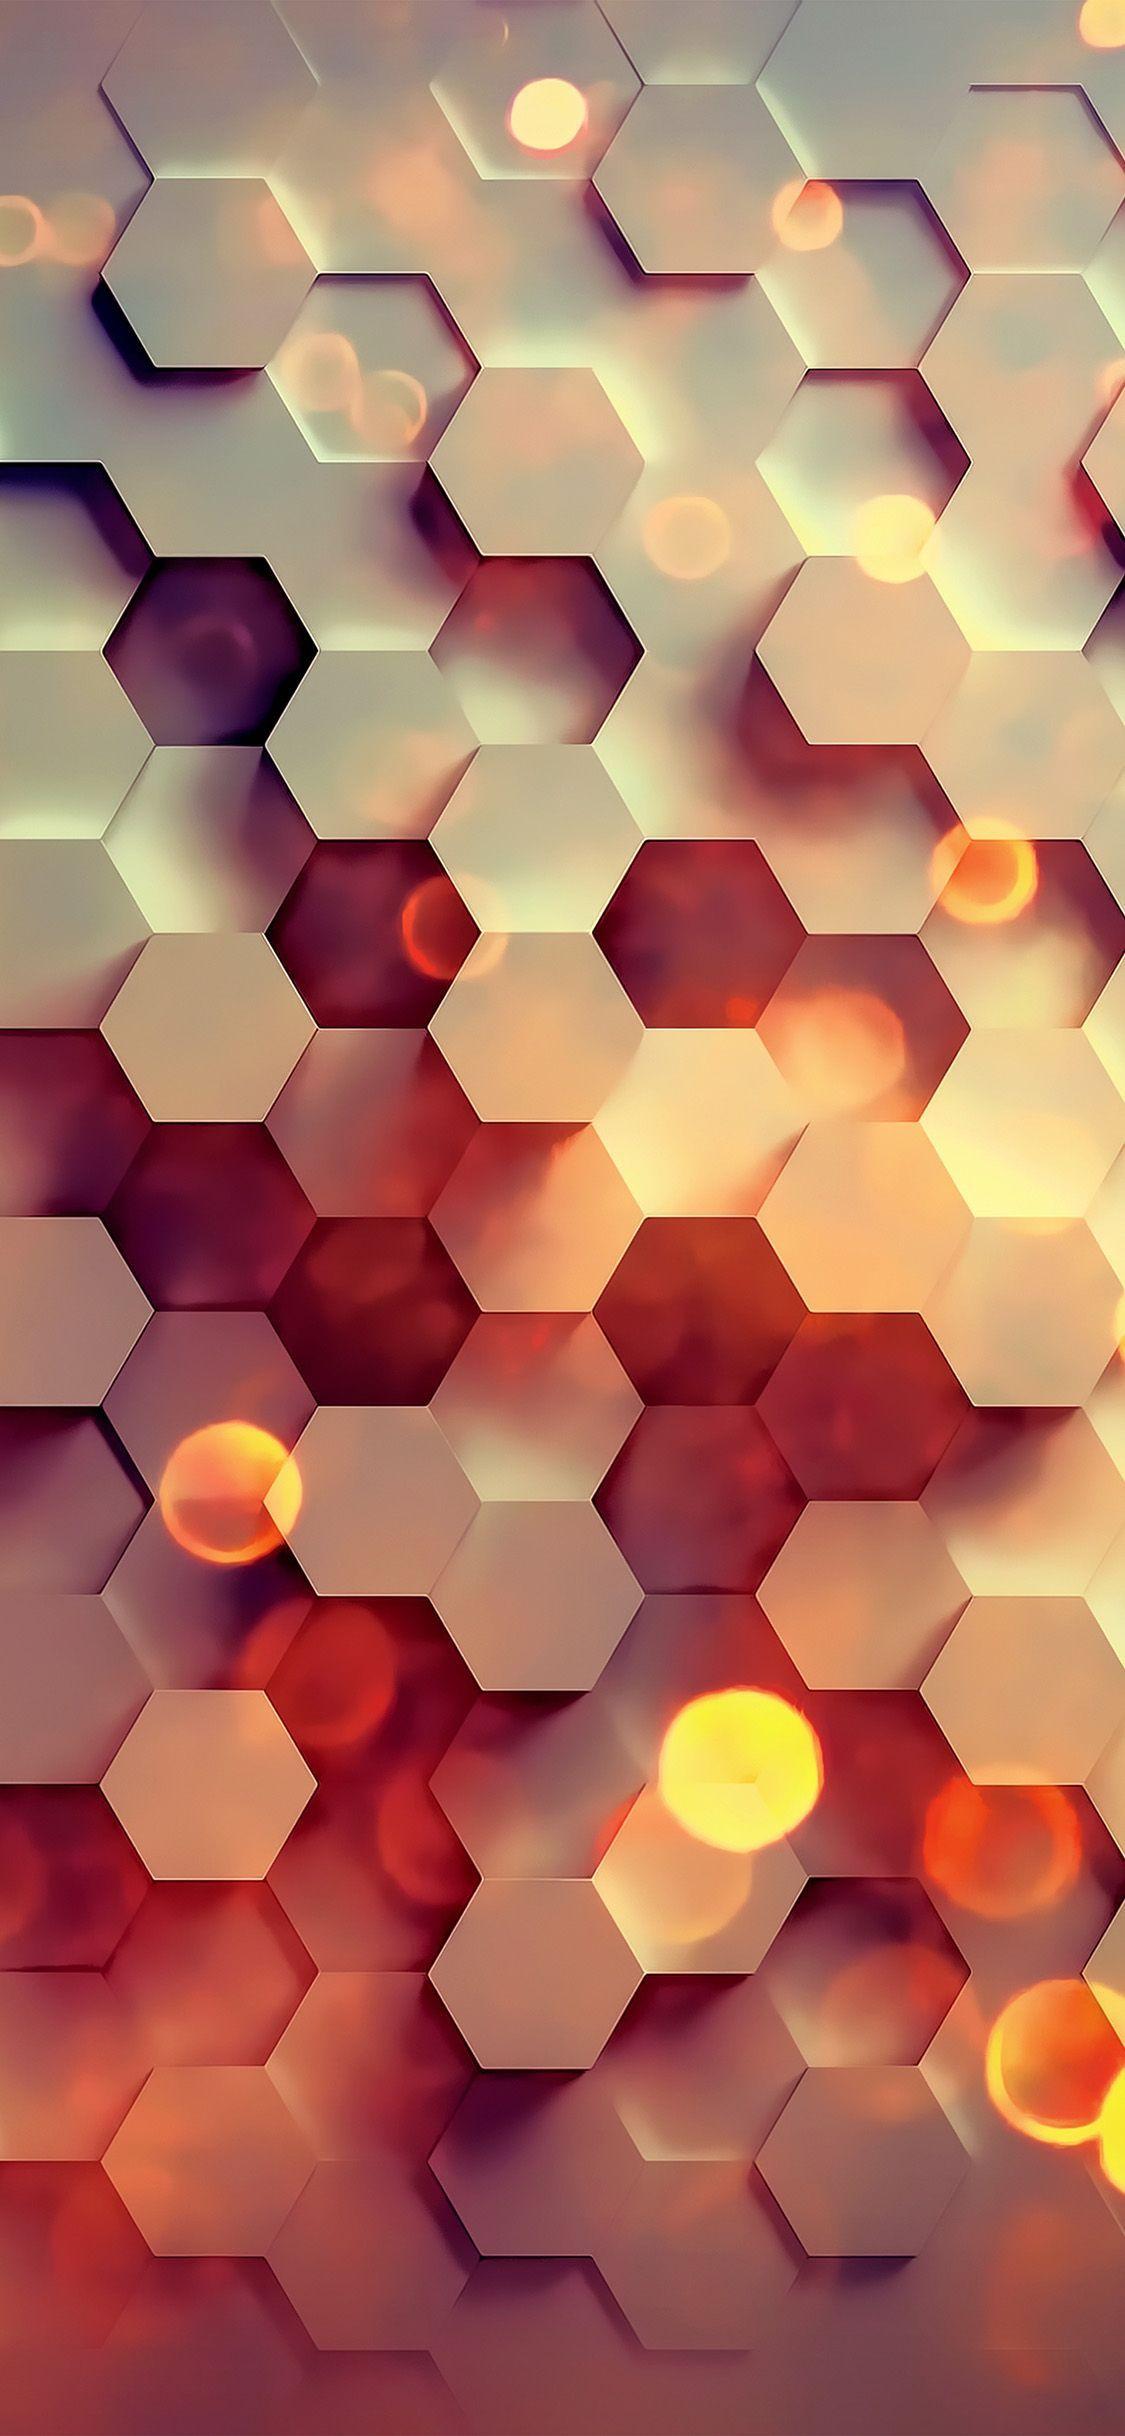 Download Hexagon Wallpaper